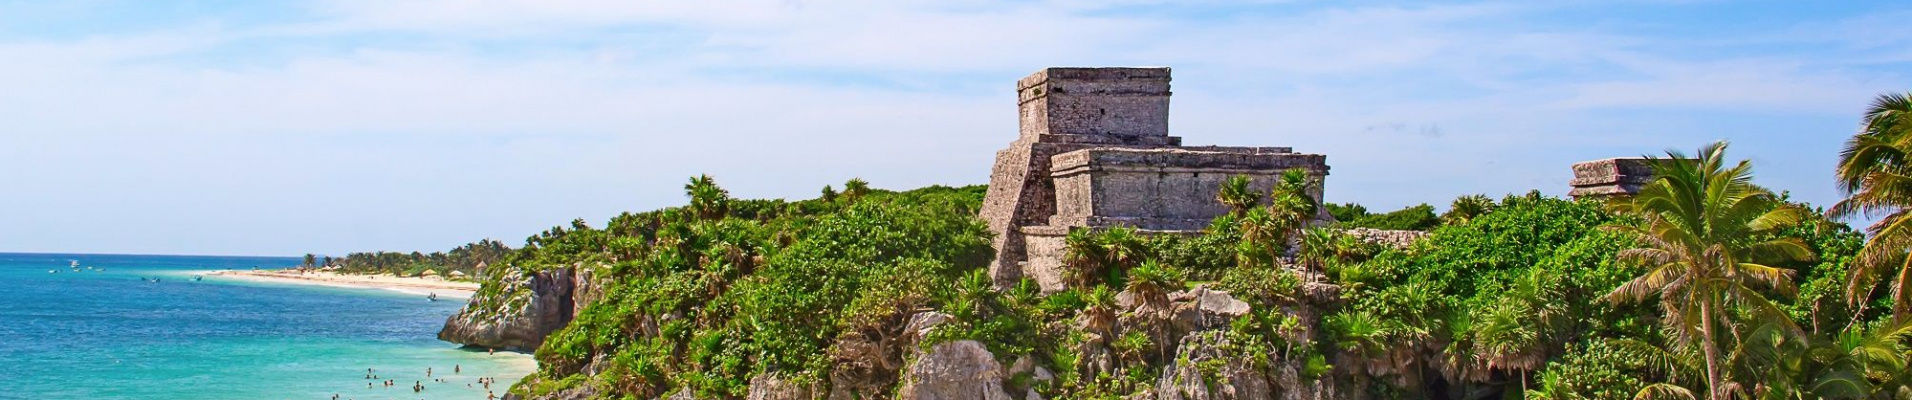 Tulum, cité maya face à la mer des Caraïbes, Yucatan, Mexique